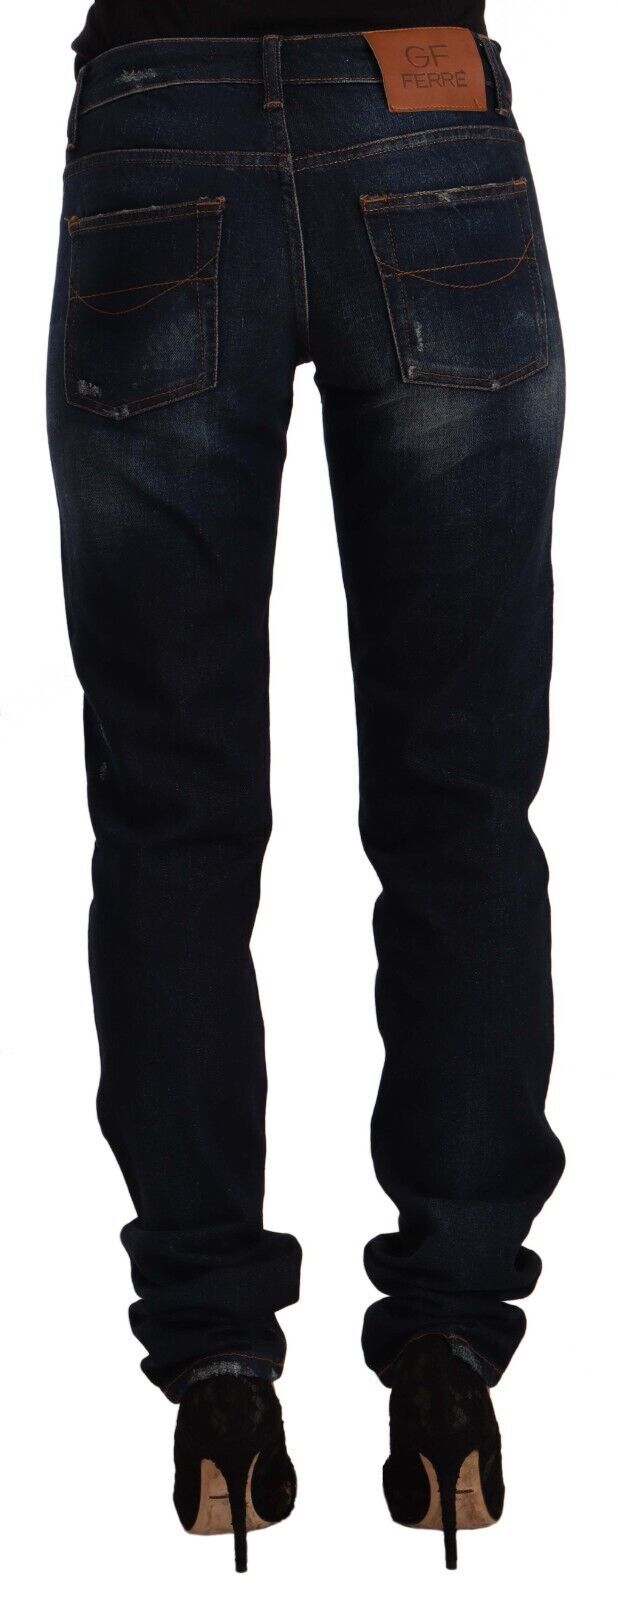 Chic Mid-Waist Skinny Jeans in Dark Blue Wash